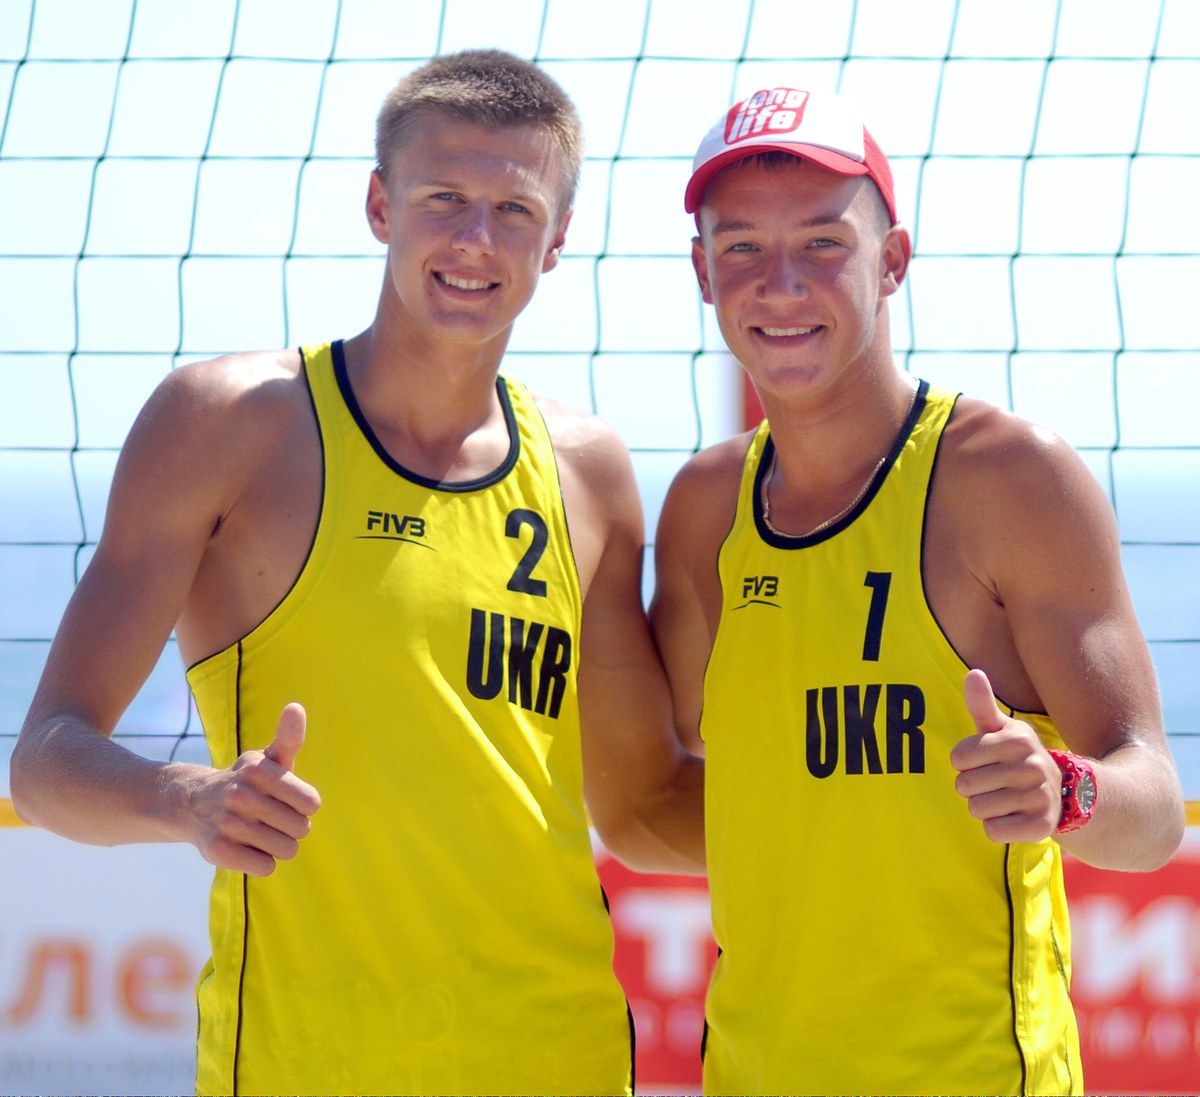 Олег Плотницкий – один из самых талантливых молодых волейболистов не только в Украине, но и в Европе / фото loko.in.ua